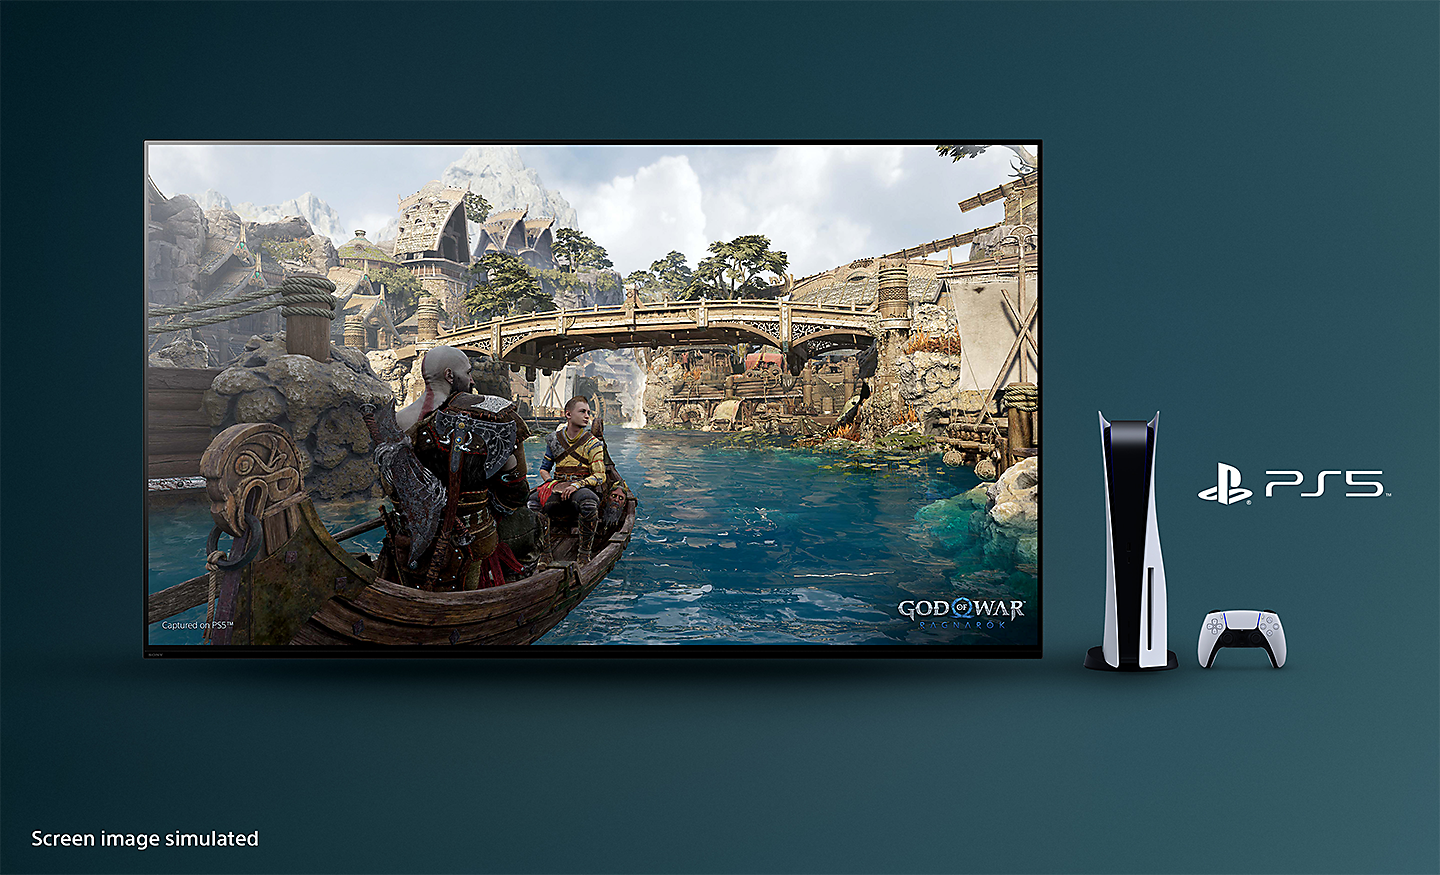 تلفزيون BRAVIA مع لقطة شاشة للعبة God of War: Ragnarok تعرض قاربًا في نهر وجسرًا في الخلفية مع جهاز PS5™‎ ووحدة تحكم خاصة به وشعار PS5™‎ على يمين التلفزيون